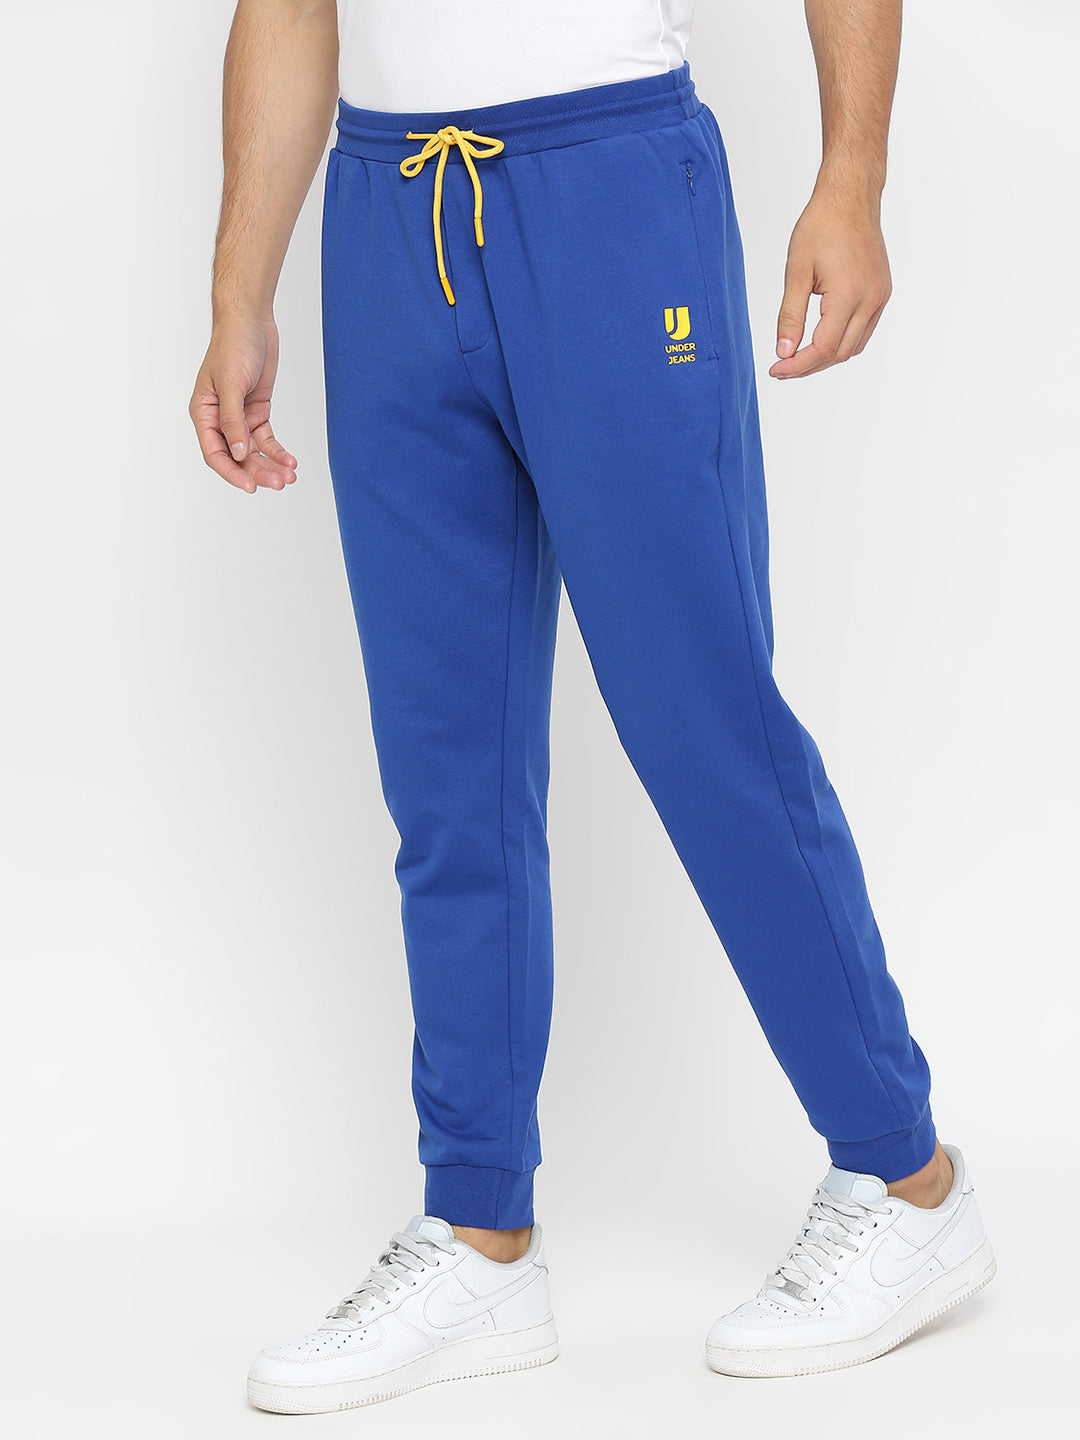 Men Premium Cotton Blend Royalblue Trackpant - UnderJeans by Spykar